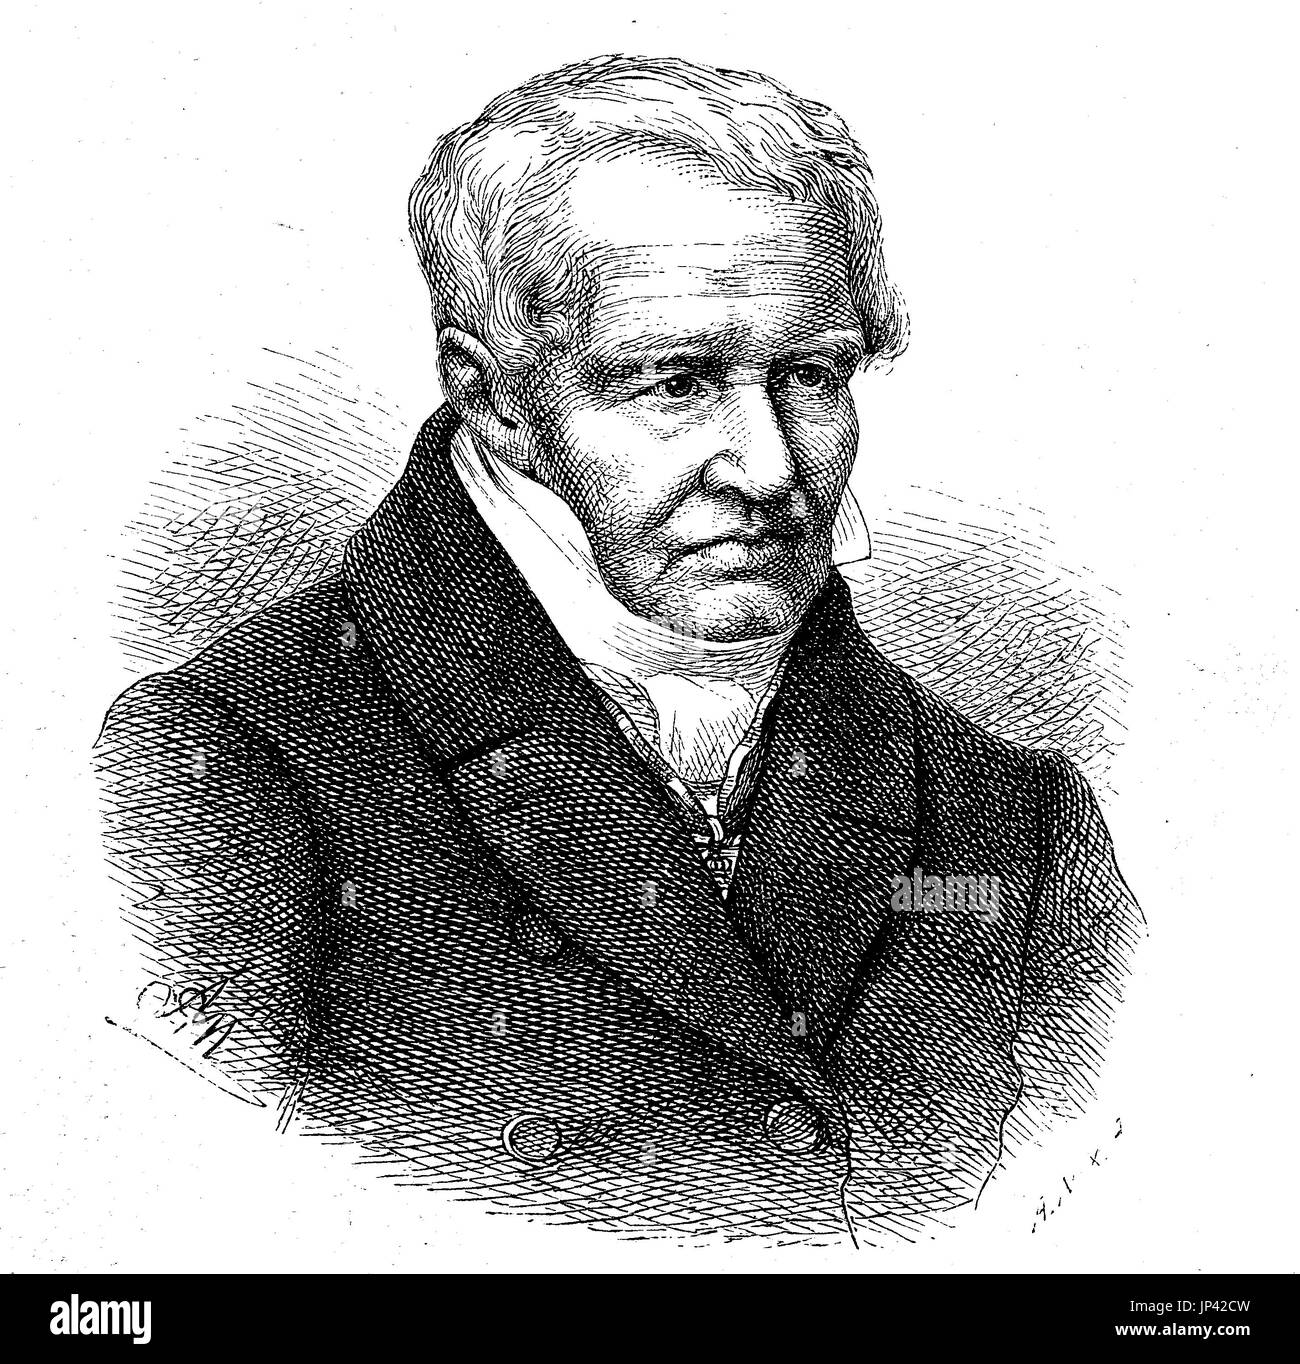 Portrait de Friedrich Wilhelm Heinrich Alexander von Humboldt, 14 septembre 1769 - 6 mai 1859, était un géographe prussien, naturaliste, explorateur et influent promoteur de la science et la philosophie romantique, l'Allemagne, l'amélioration numérique reproduction d'une gravure sur bois à partir de la publication de l'année 1888 Banque D'Images